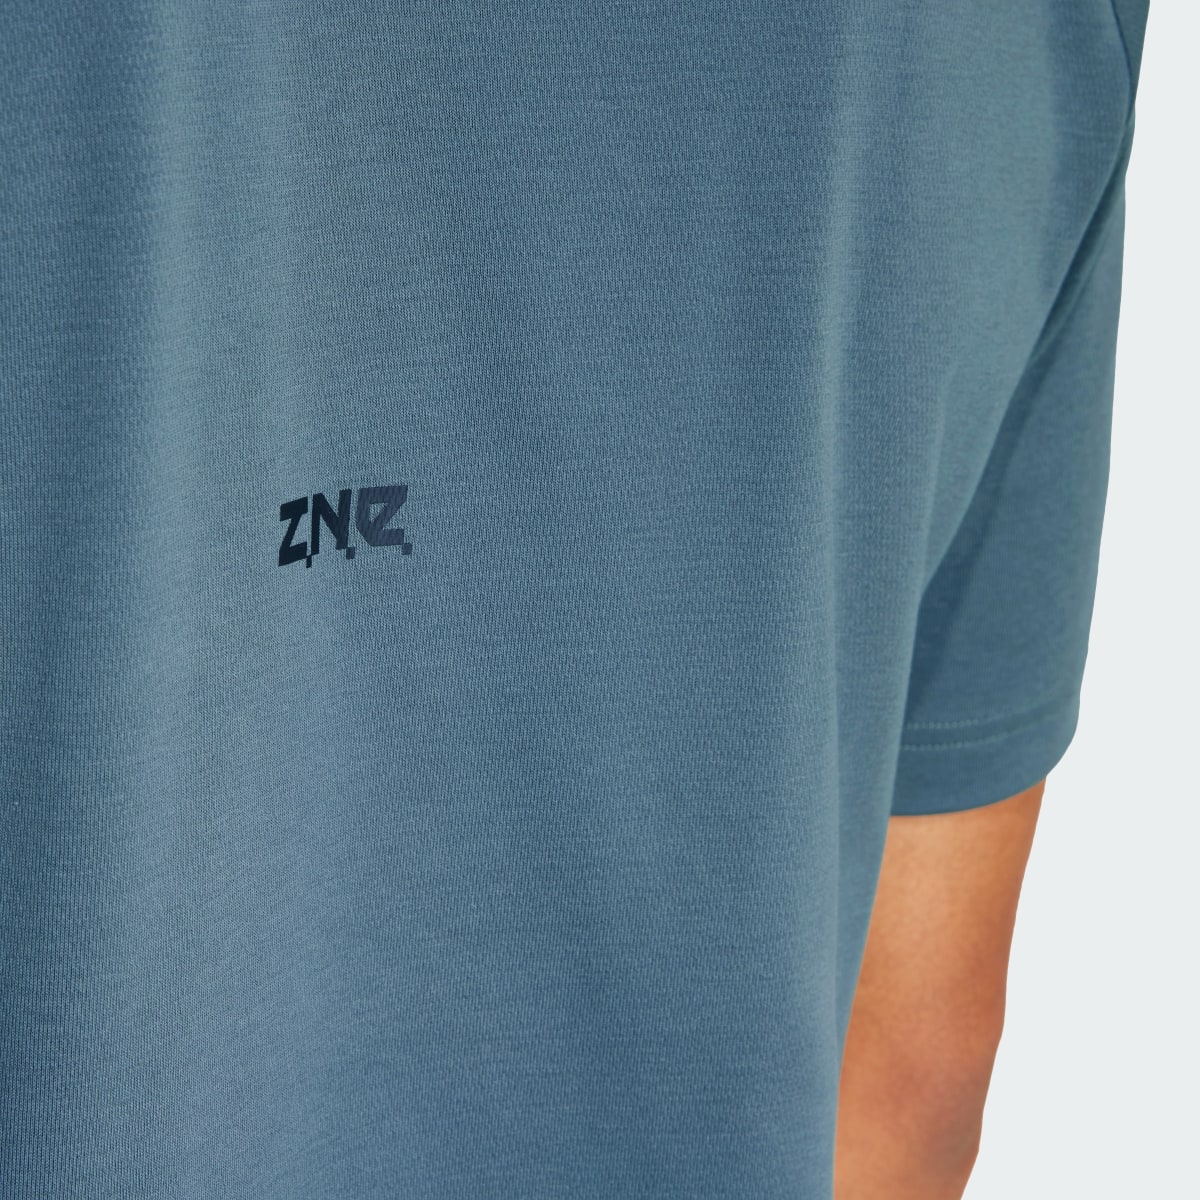 Adidas Z.N.E. T-Shirt. 7